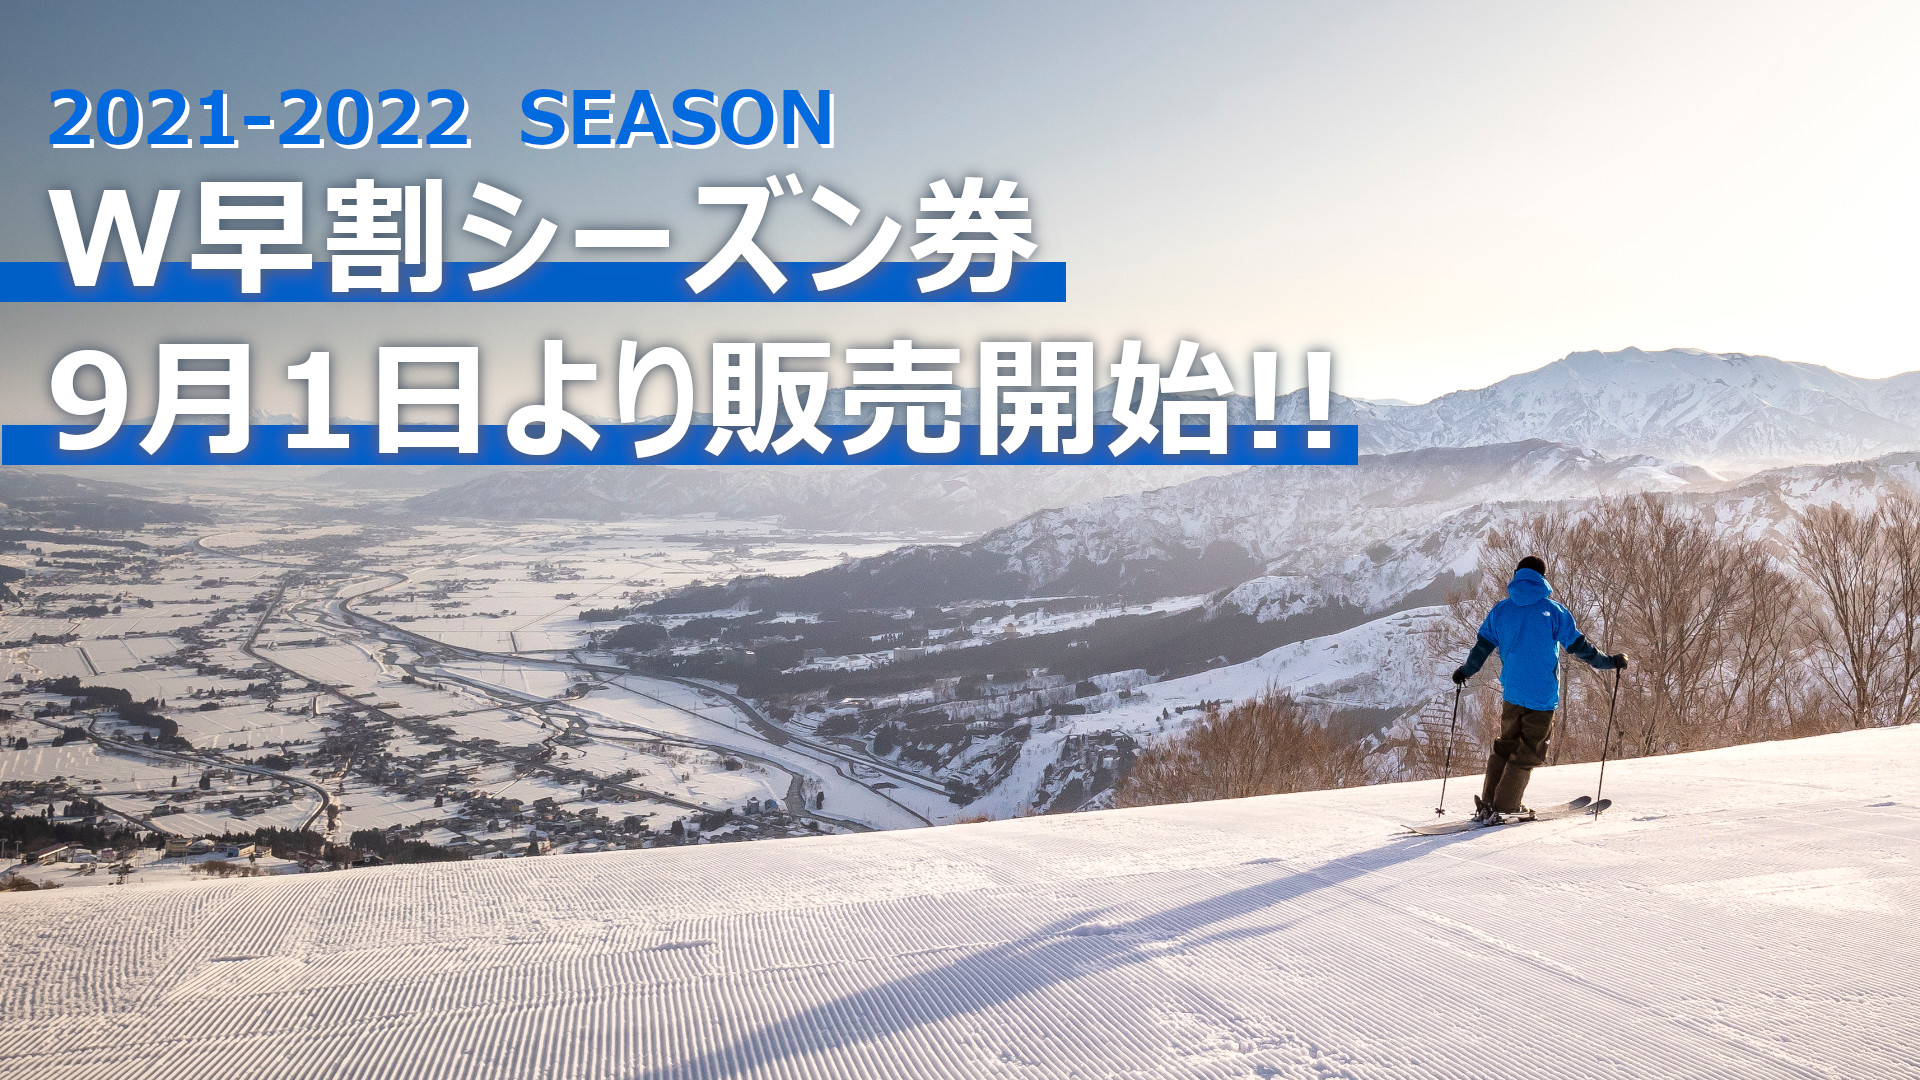 テスト 21-22シーズン券販売ページ | 石打丸山スキー場【公式サイト】